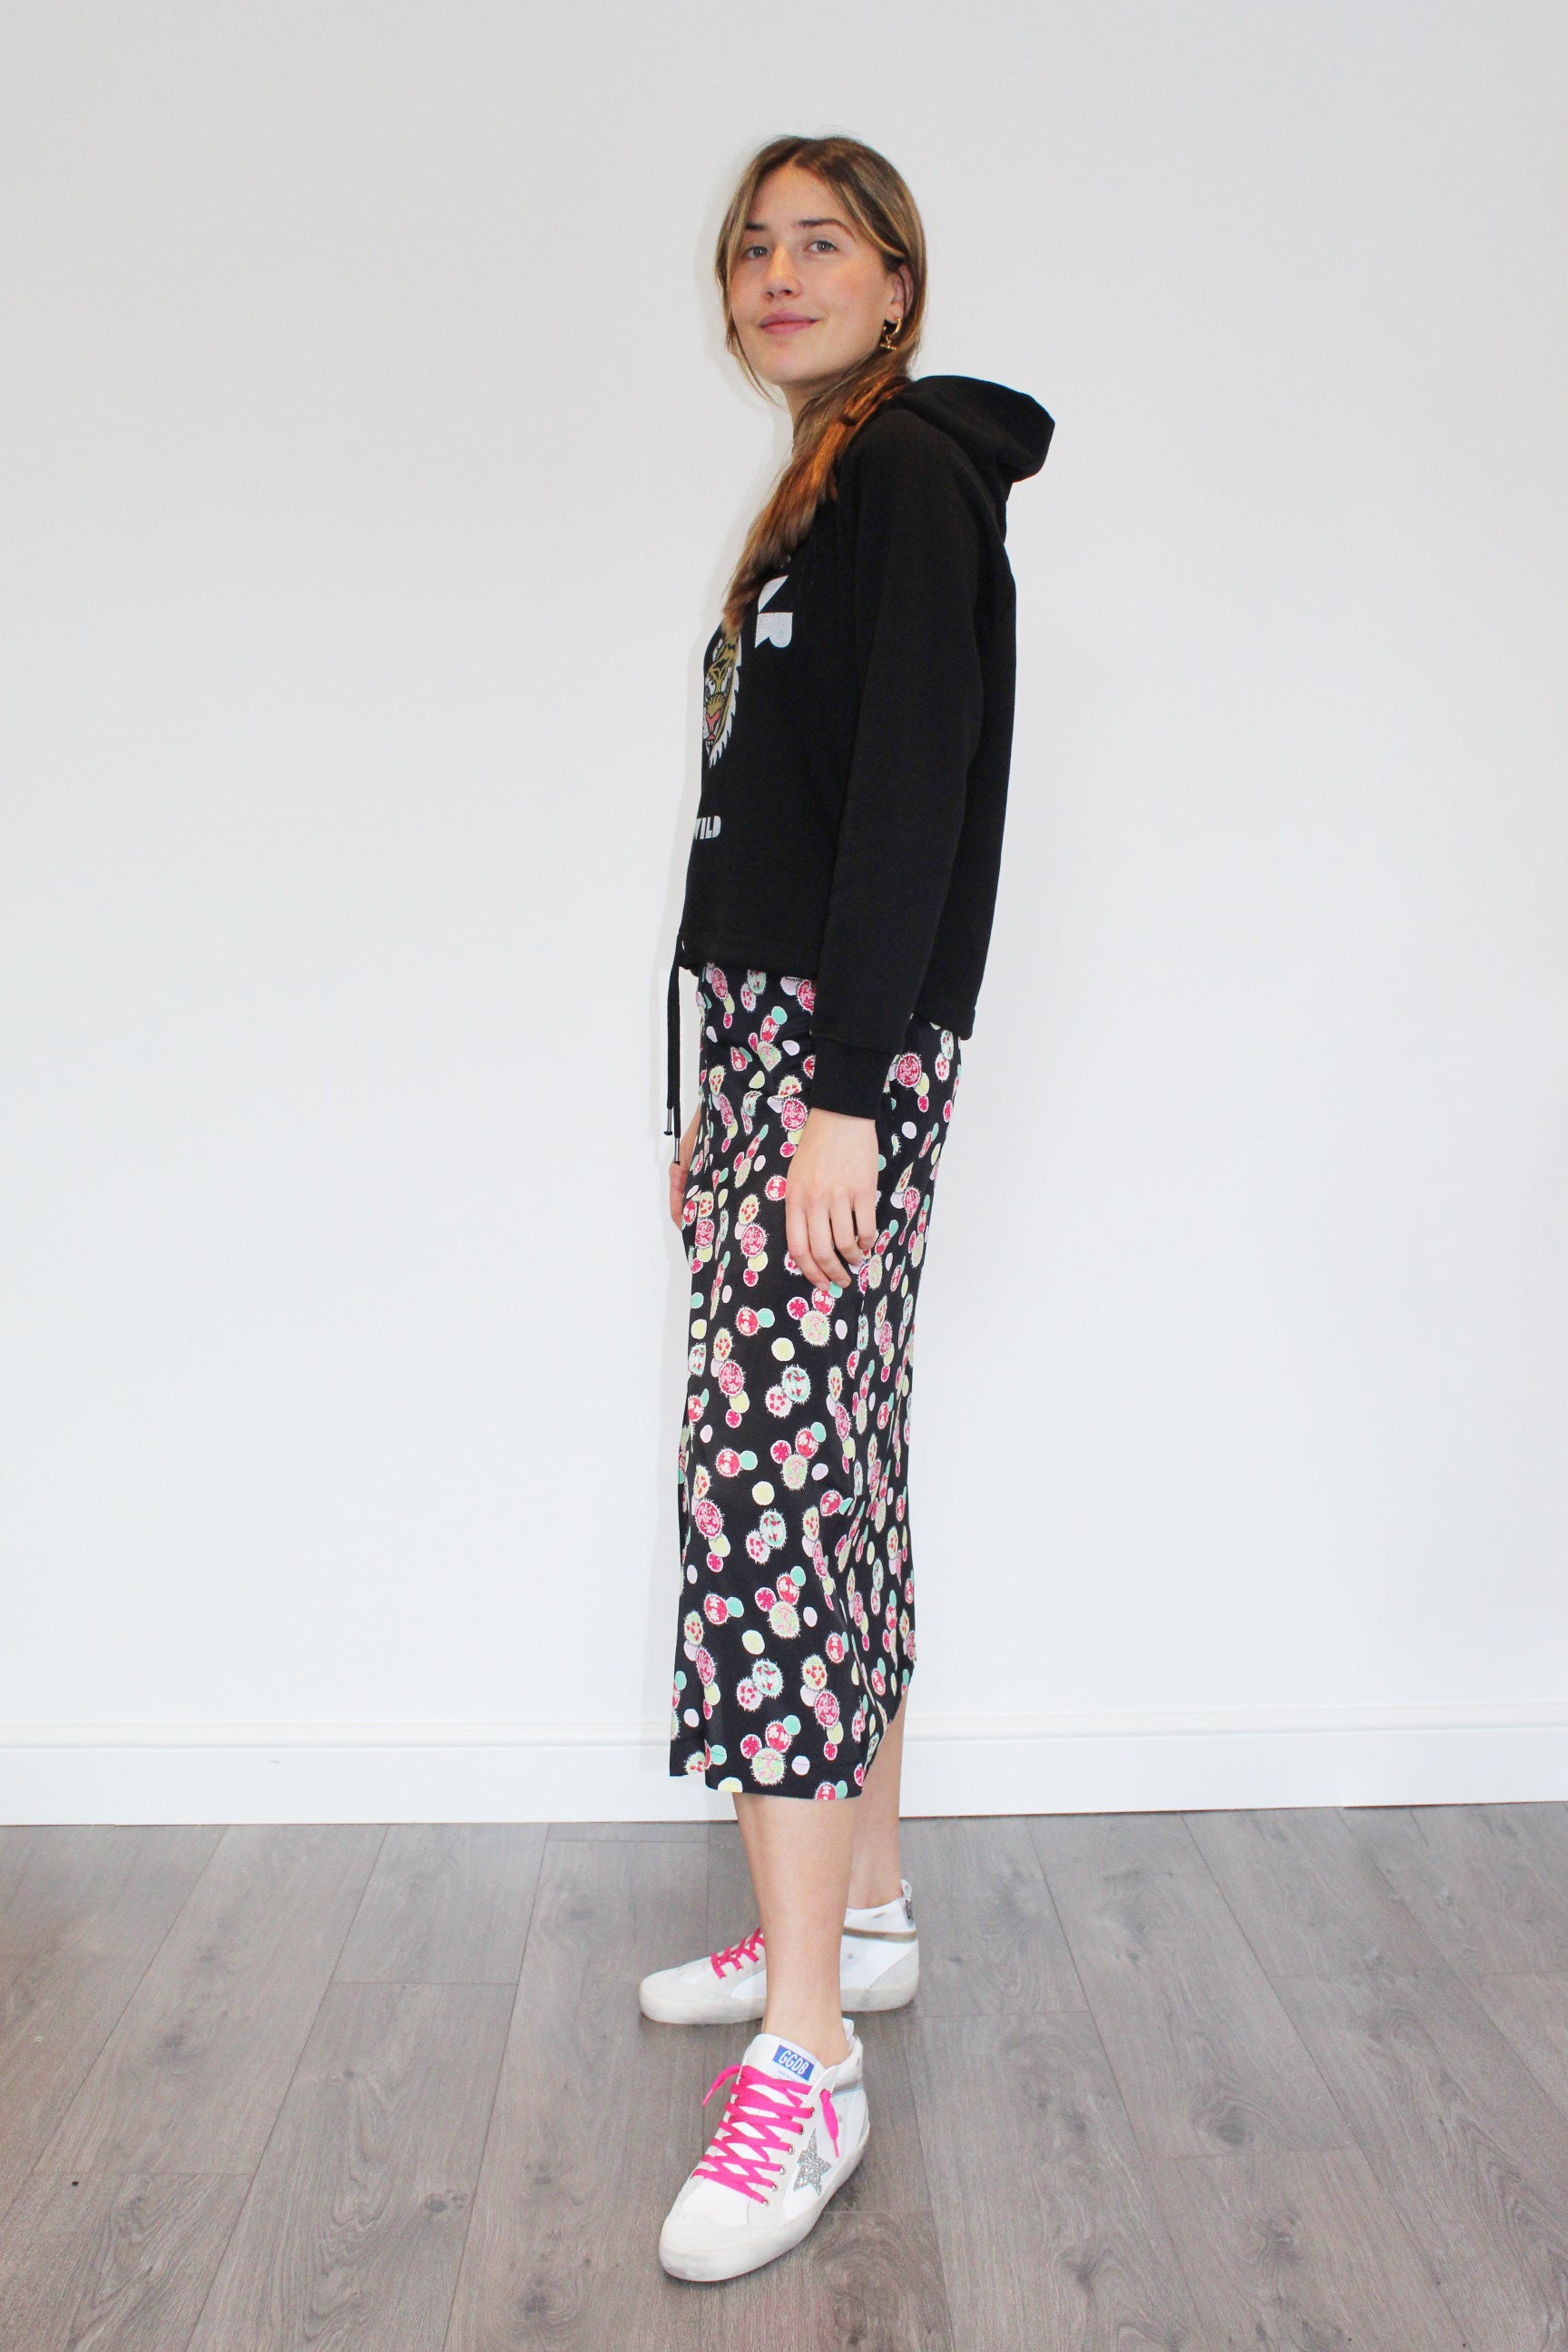 PPL Lauren Skirt in Floral Attack 03 Multi on Black